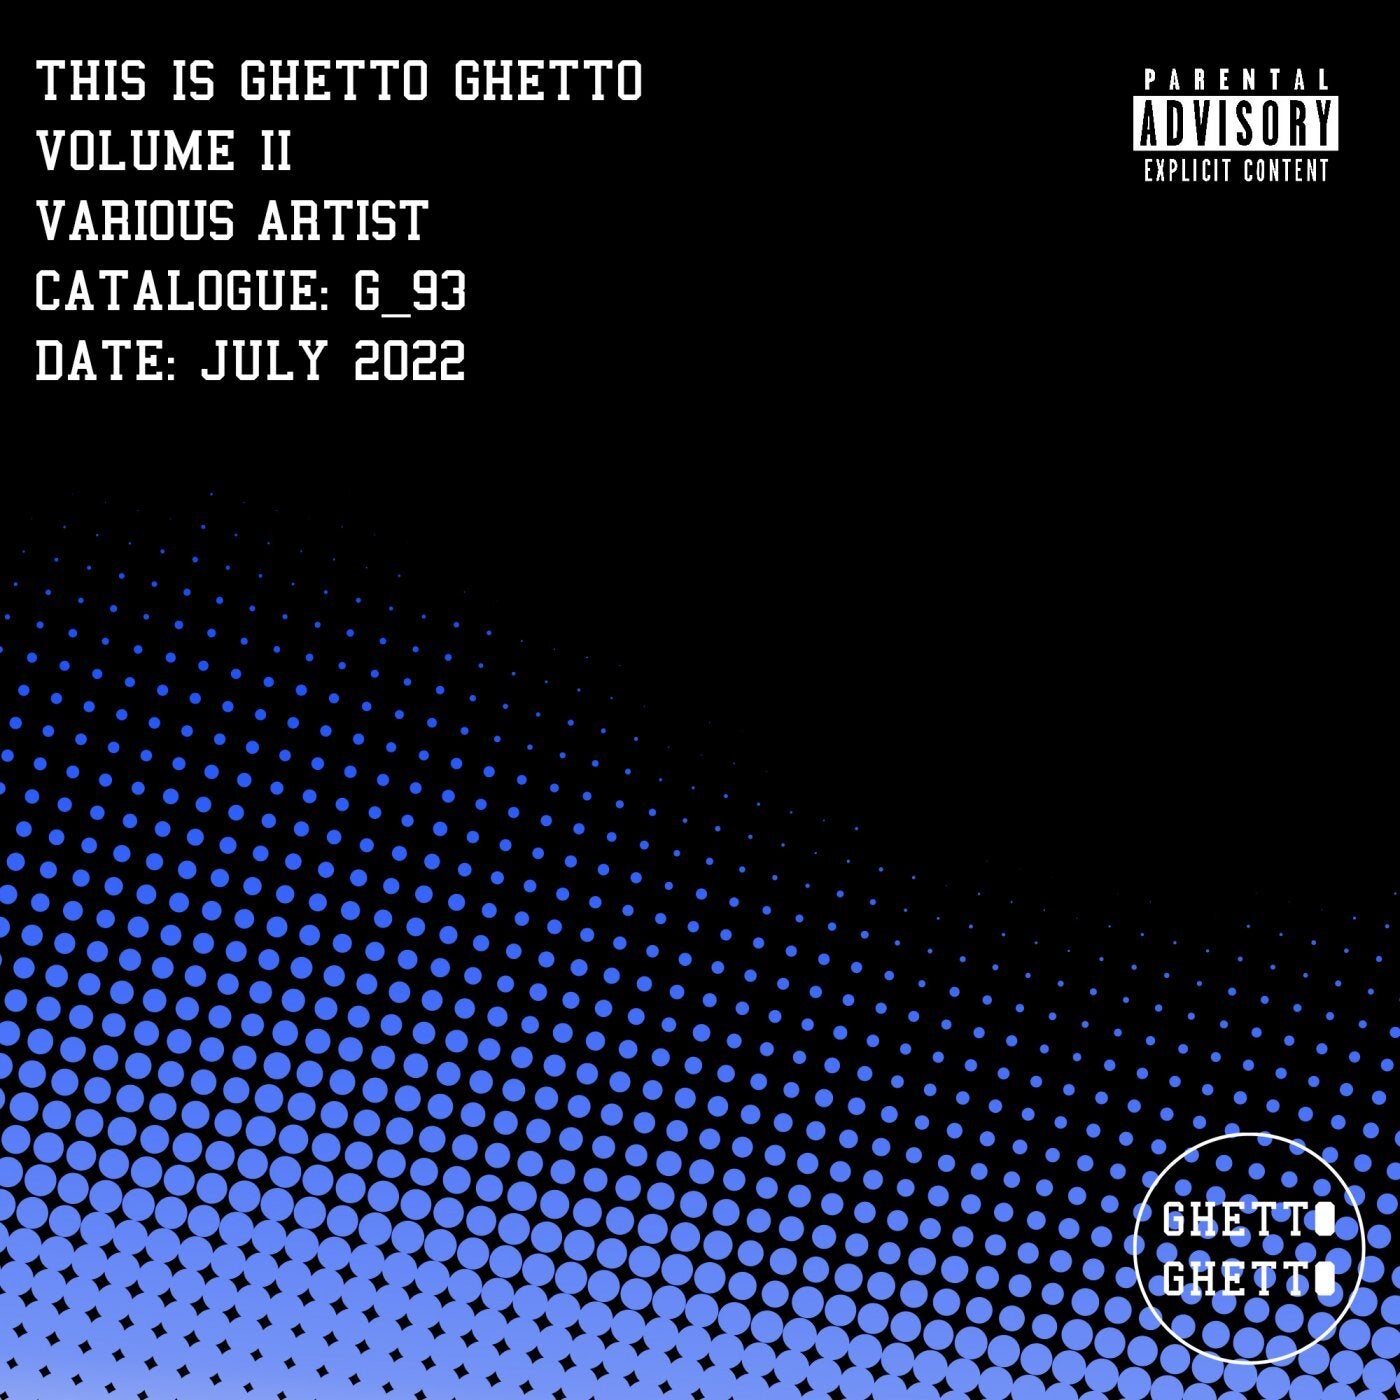 This is Ghetto Ghetto Volume II